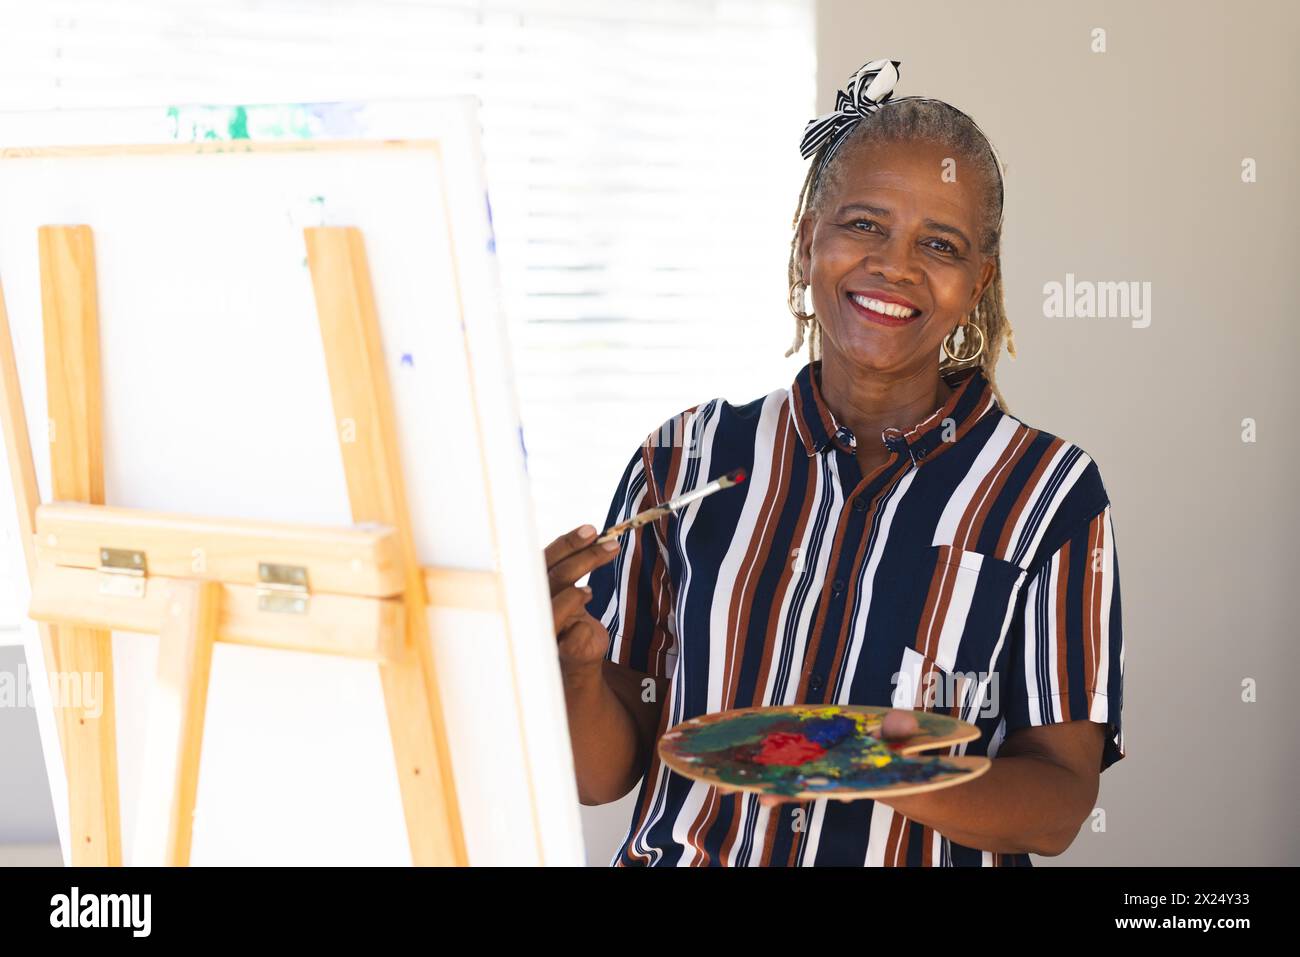 Femme aînée afro-américaine peignant sur toile à la maison, portant une chemise rayée. Elle a les cheveux gris, souriant, tenant la palette et le pinceau, inaltérés Banque D'Images